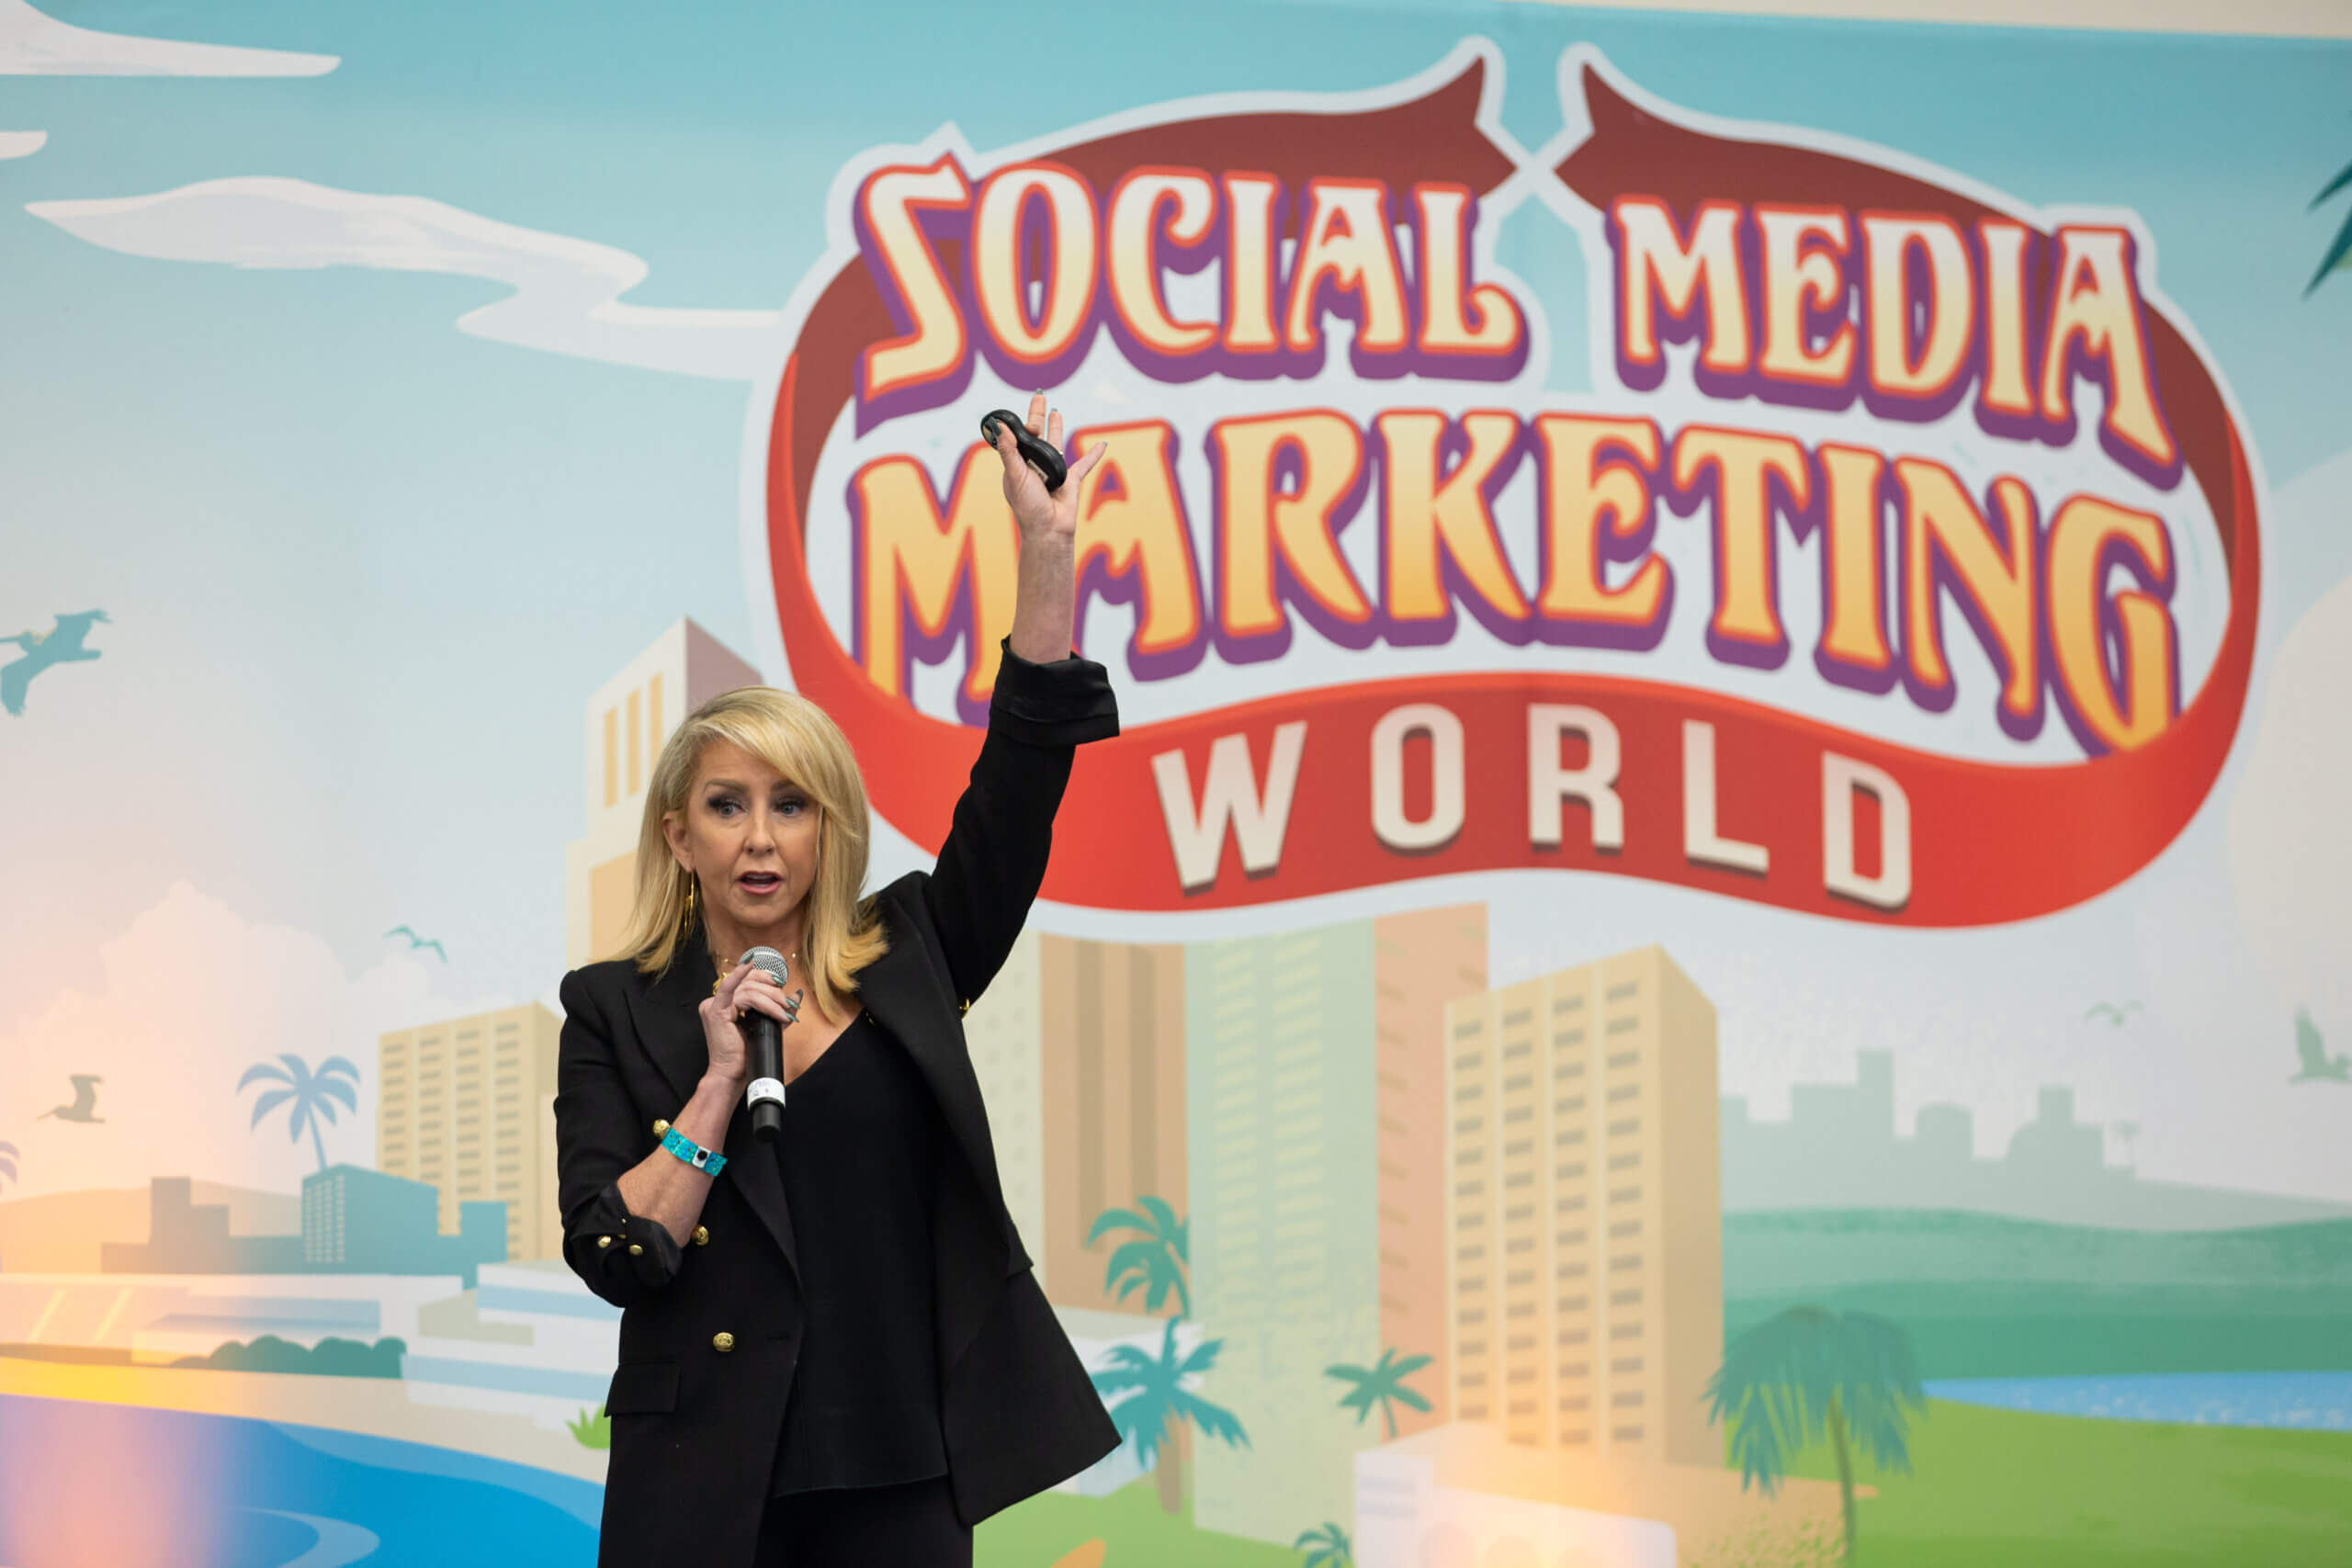 sosiaalisen median markkinoinnin maailma